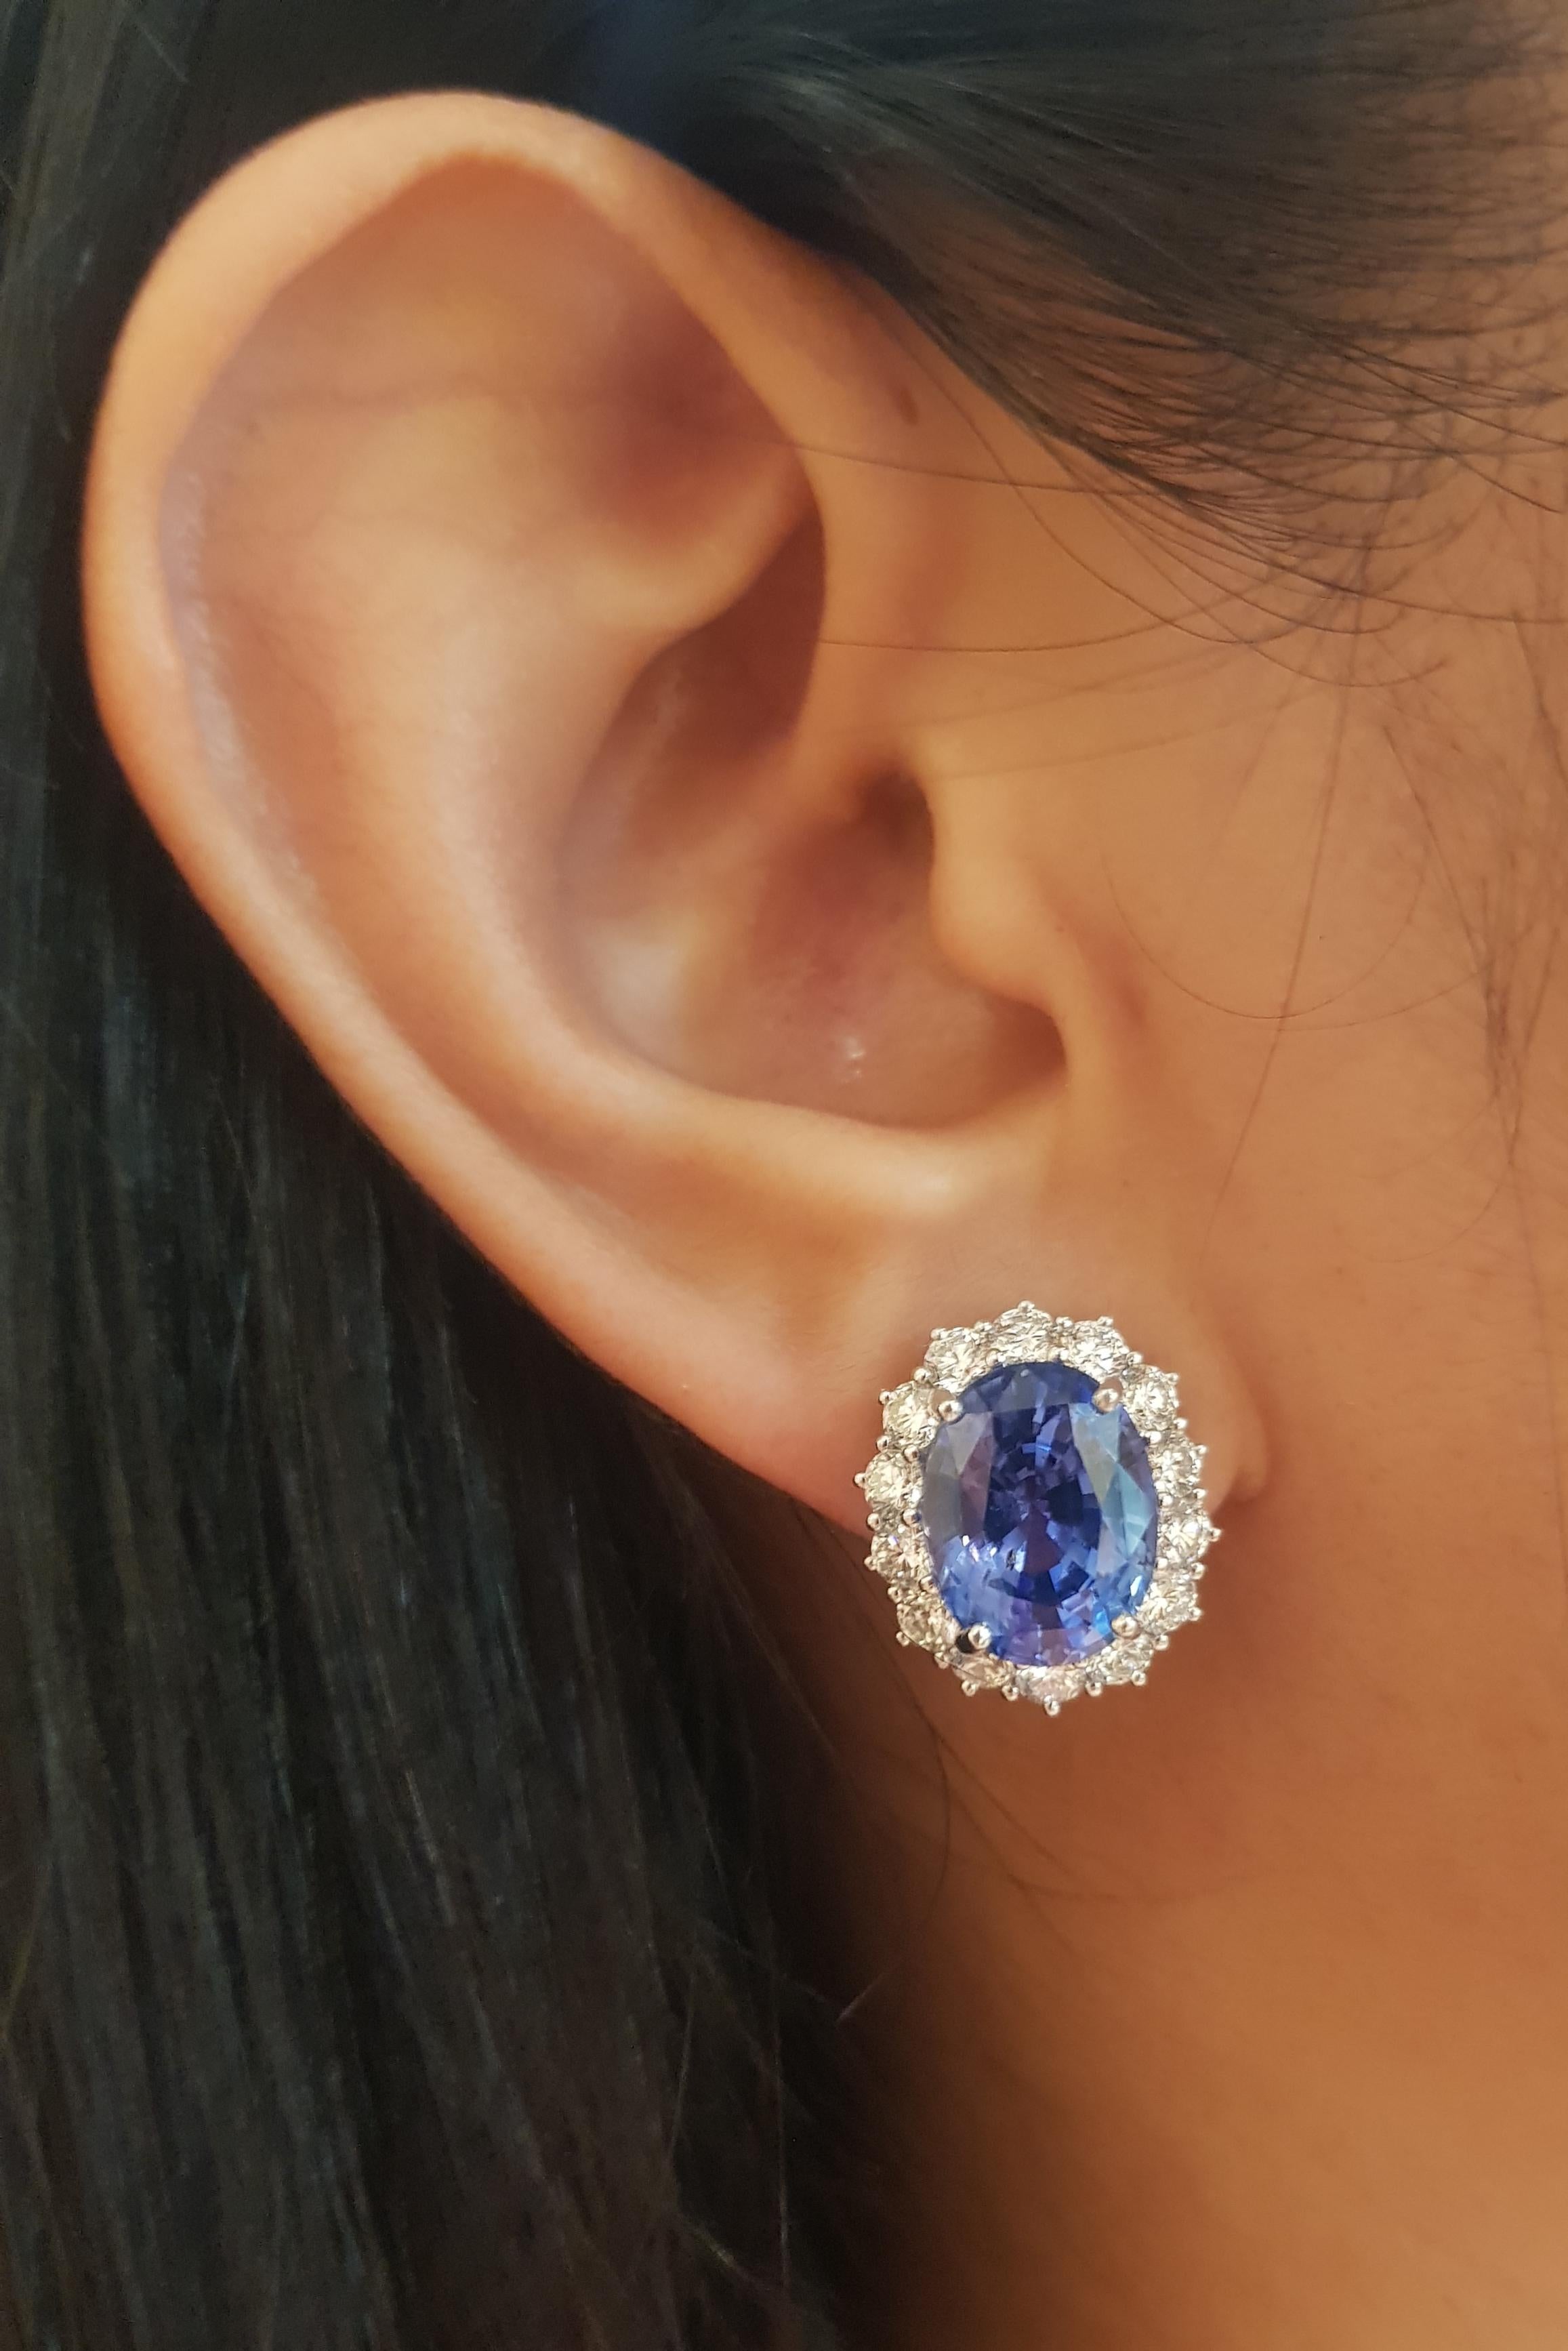 Blauer Saphir 12,56 Karat mit Diamant 2,60 Karat Ohrringe in 18K Weißgoldfassung

Breite: 1.4 cm 
Länge: 1.7 cm
Gesamtgewicht: 11,92 Gramm

